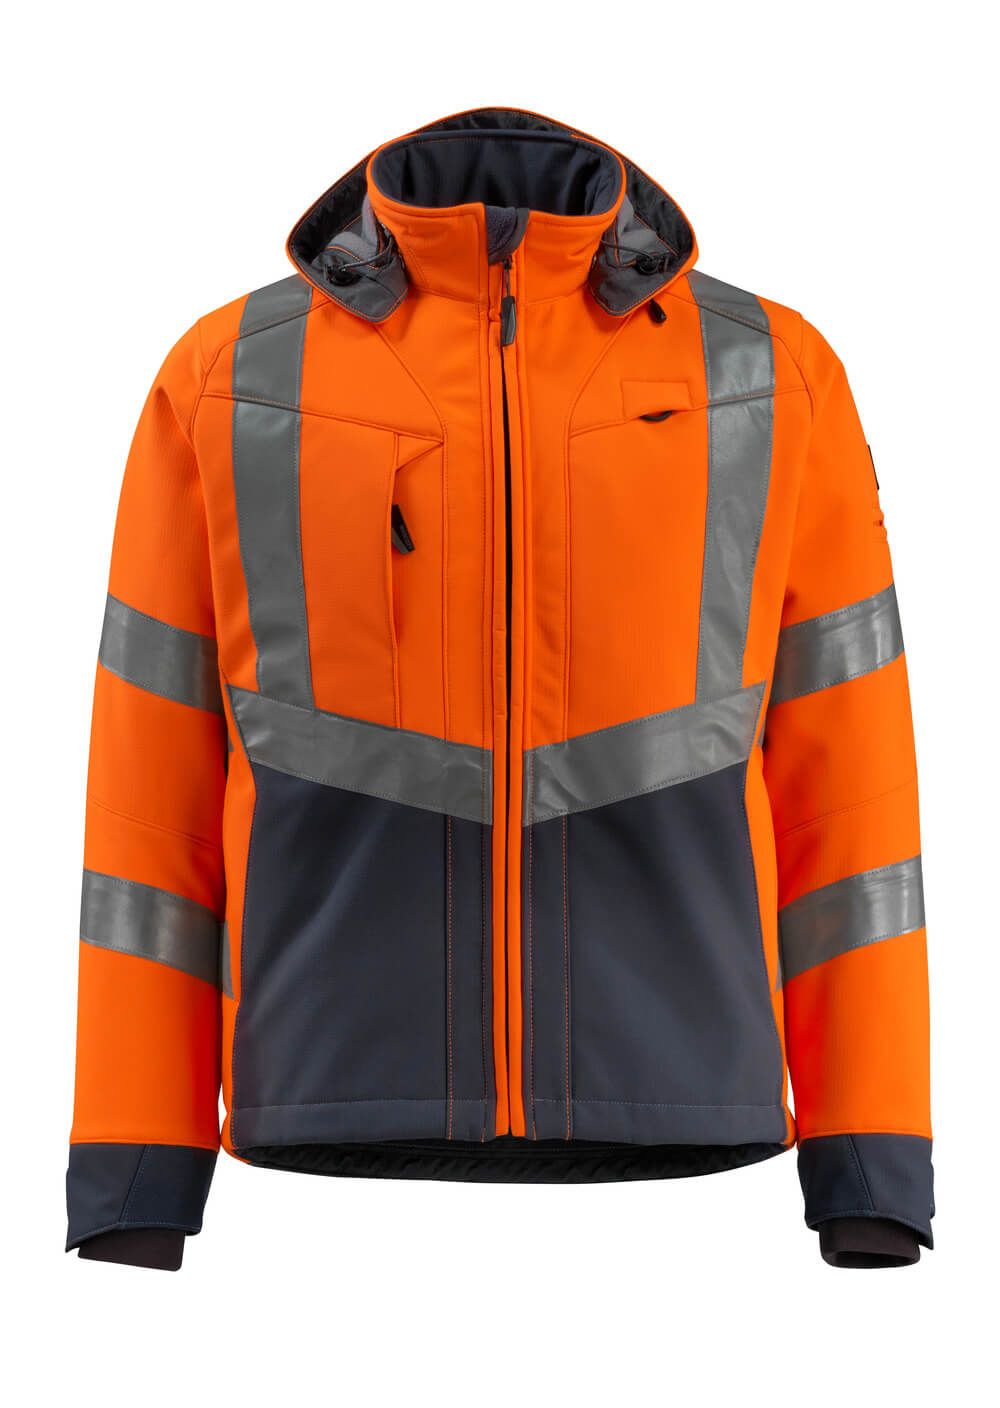 Mascot Workwear BLACKPOOL Orange/Navy Unisex Hi Vis Softshell Jacket, XL